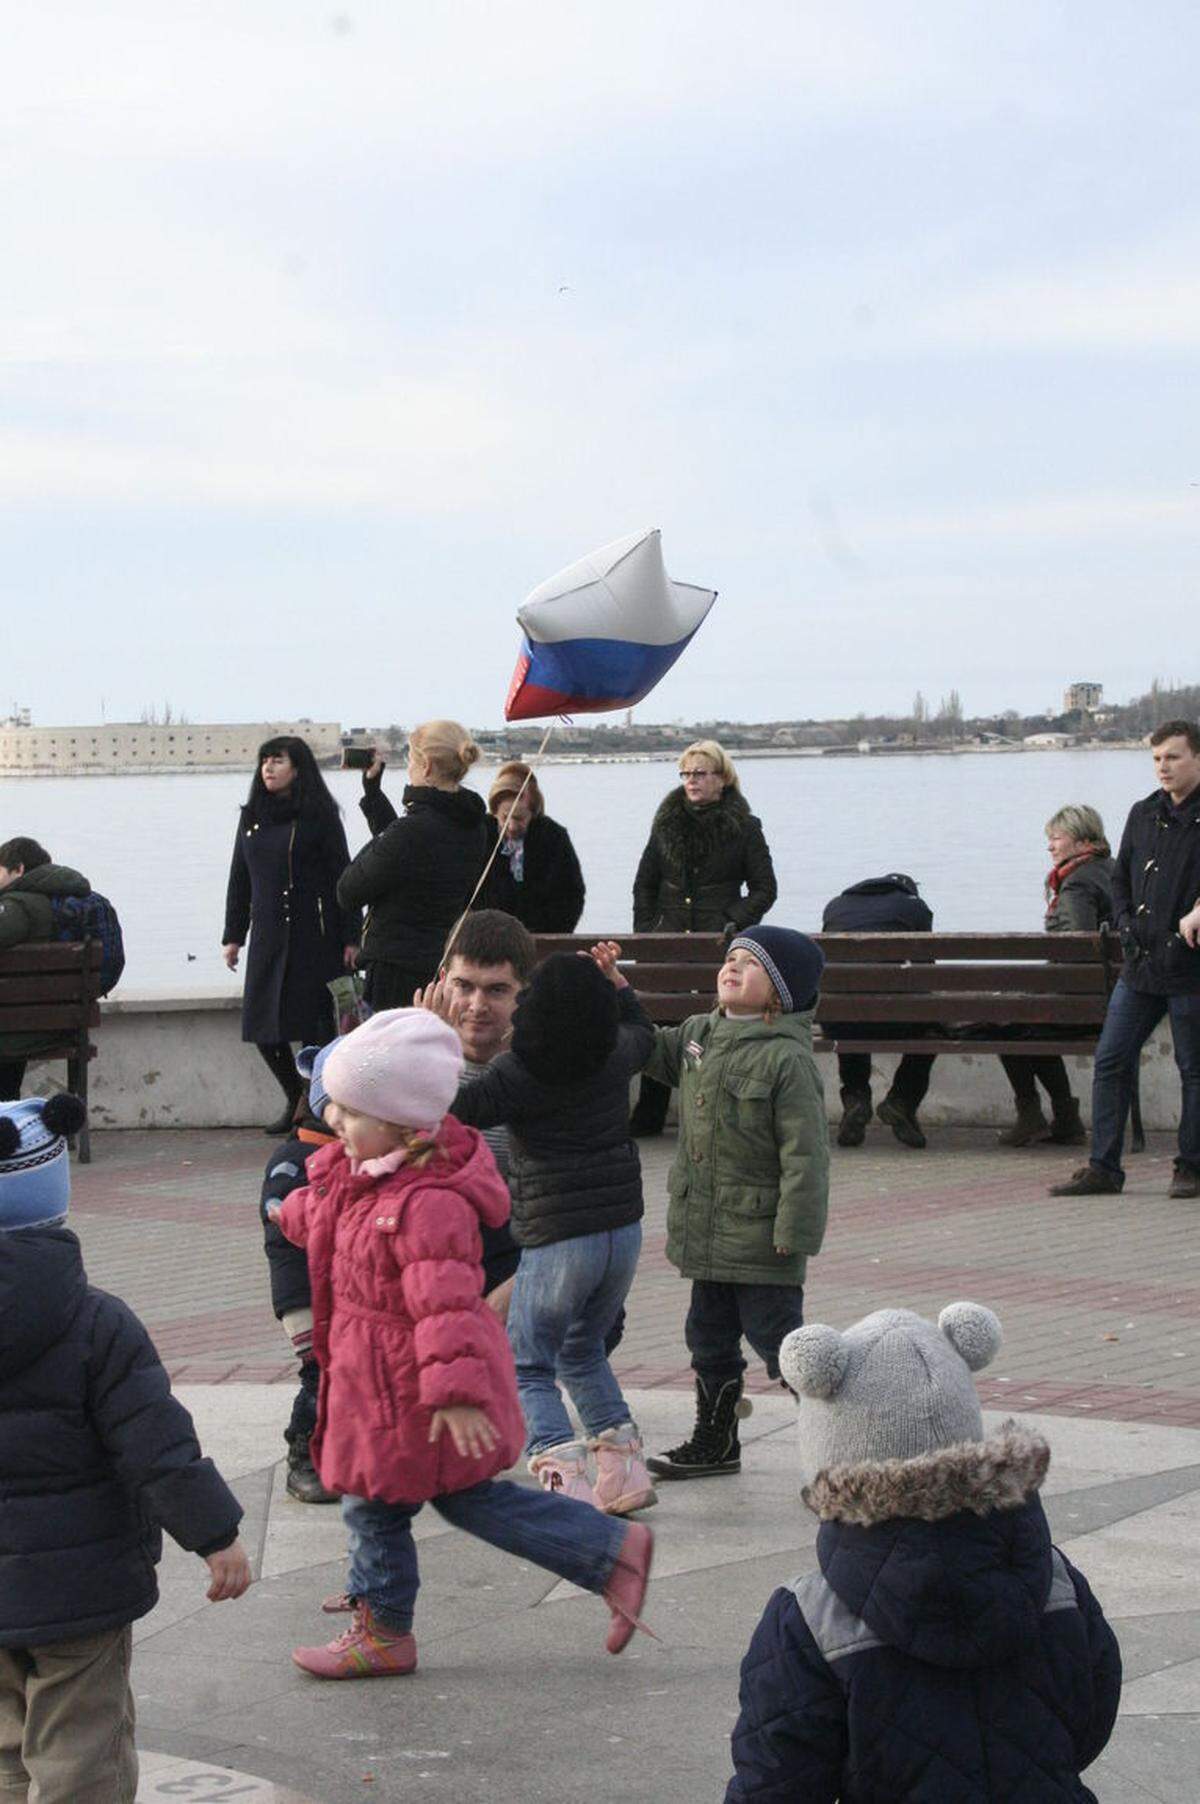 Kinder mit Luftballons in russischen Nationalfarben an der Uferpromenade von Sewastopol.